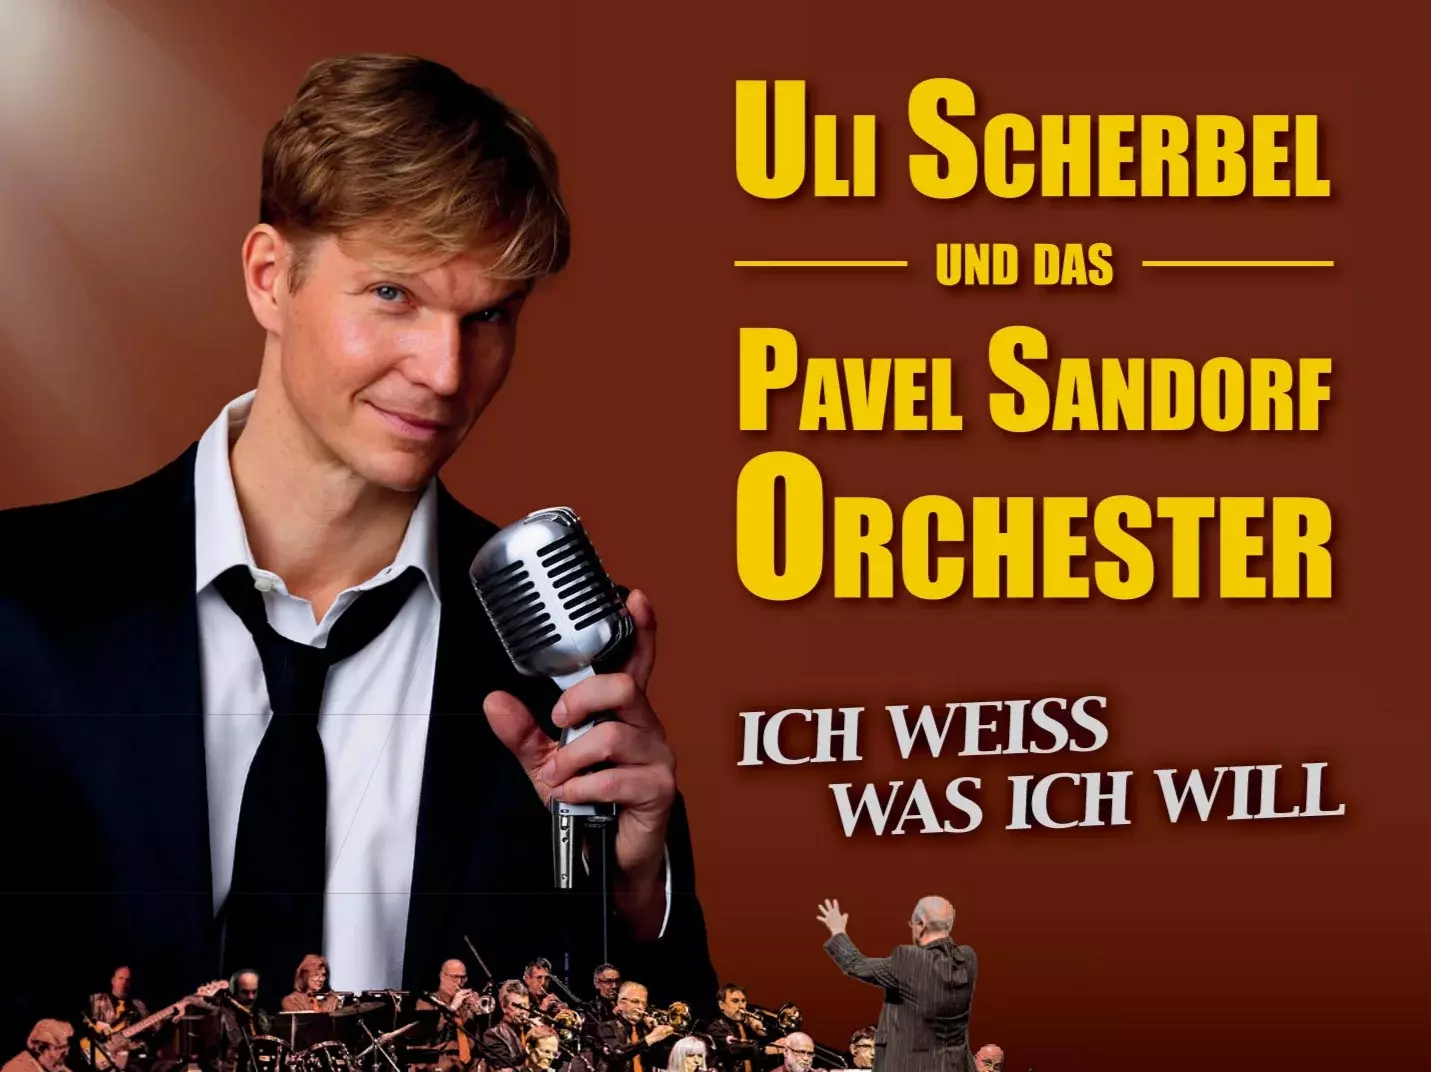 Cover mit Uli Scherbel und dem Pavel Sandorf Orchester